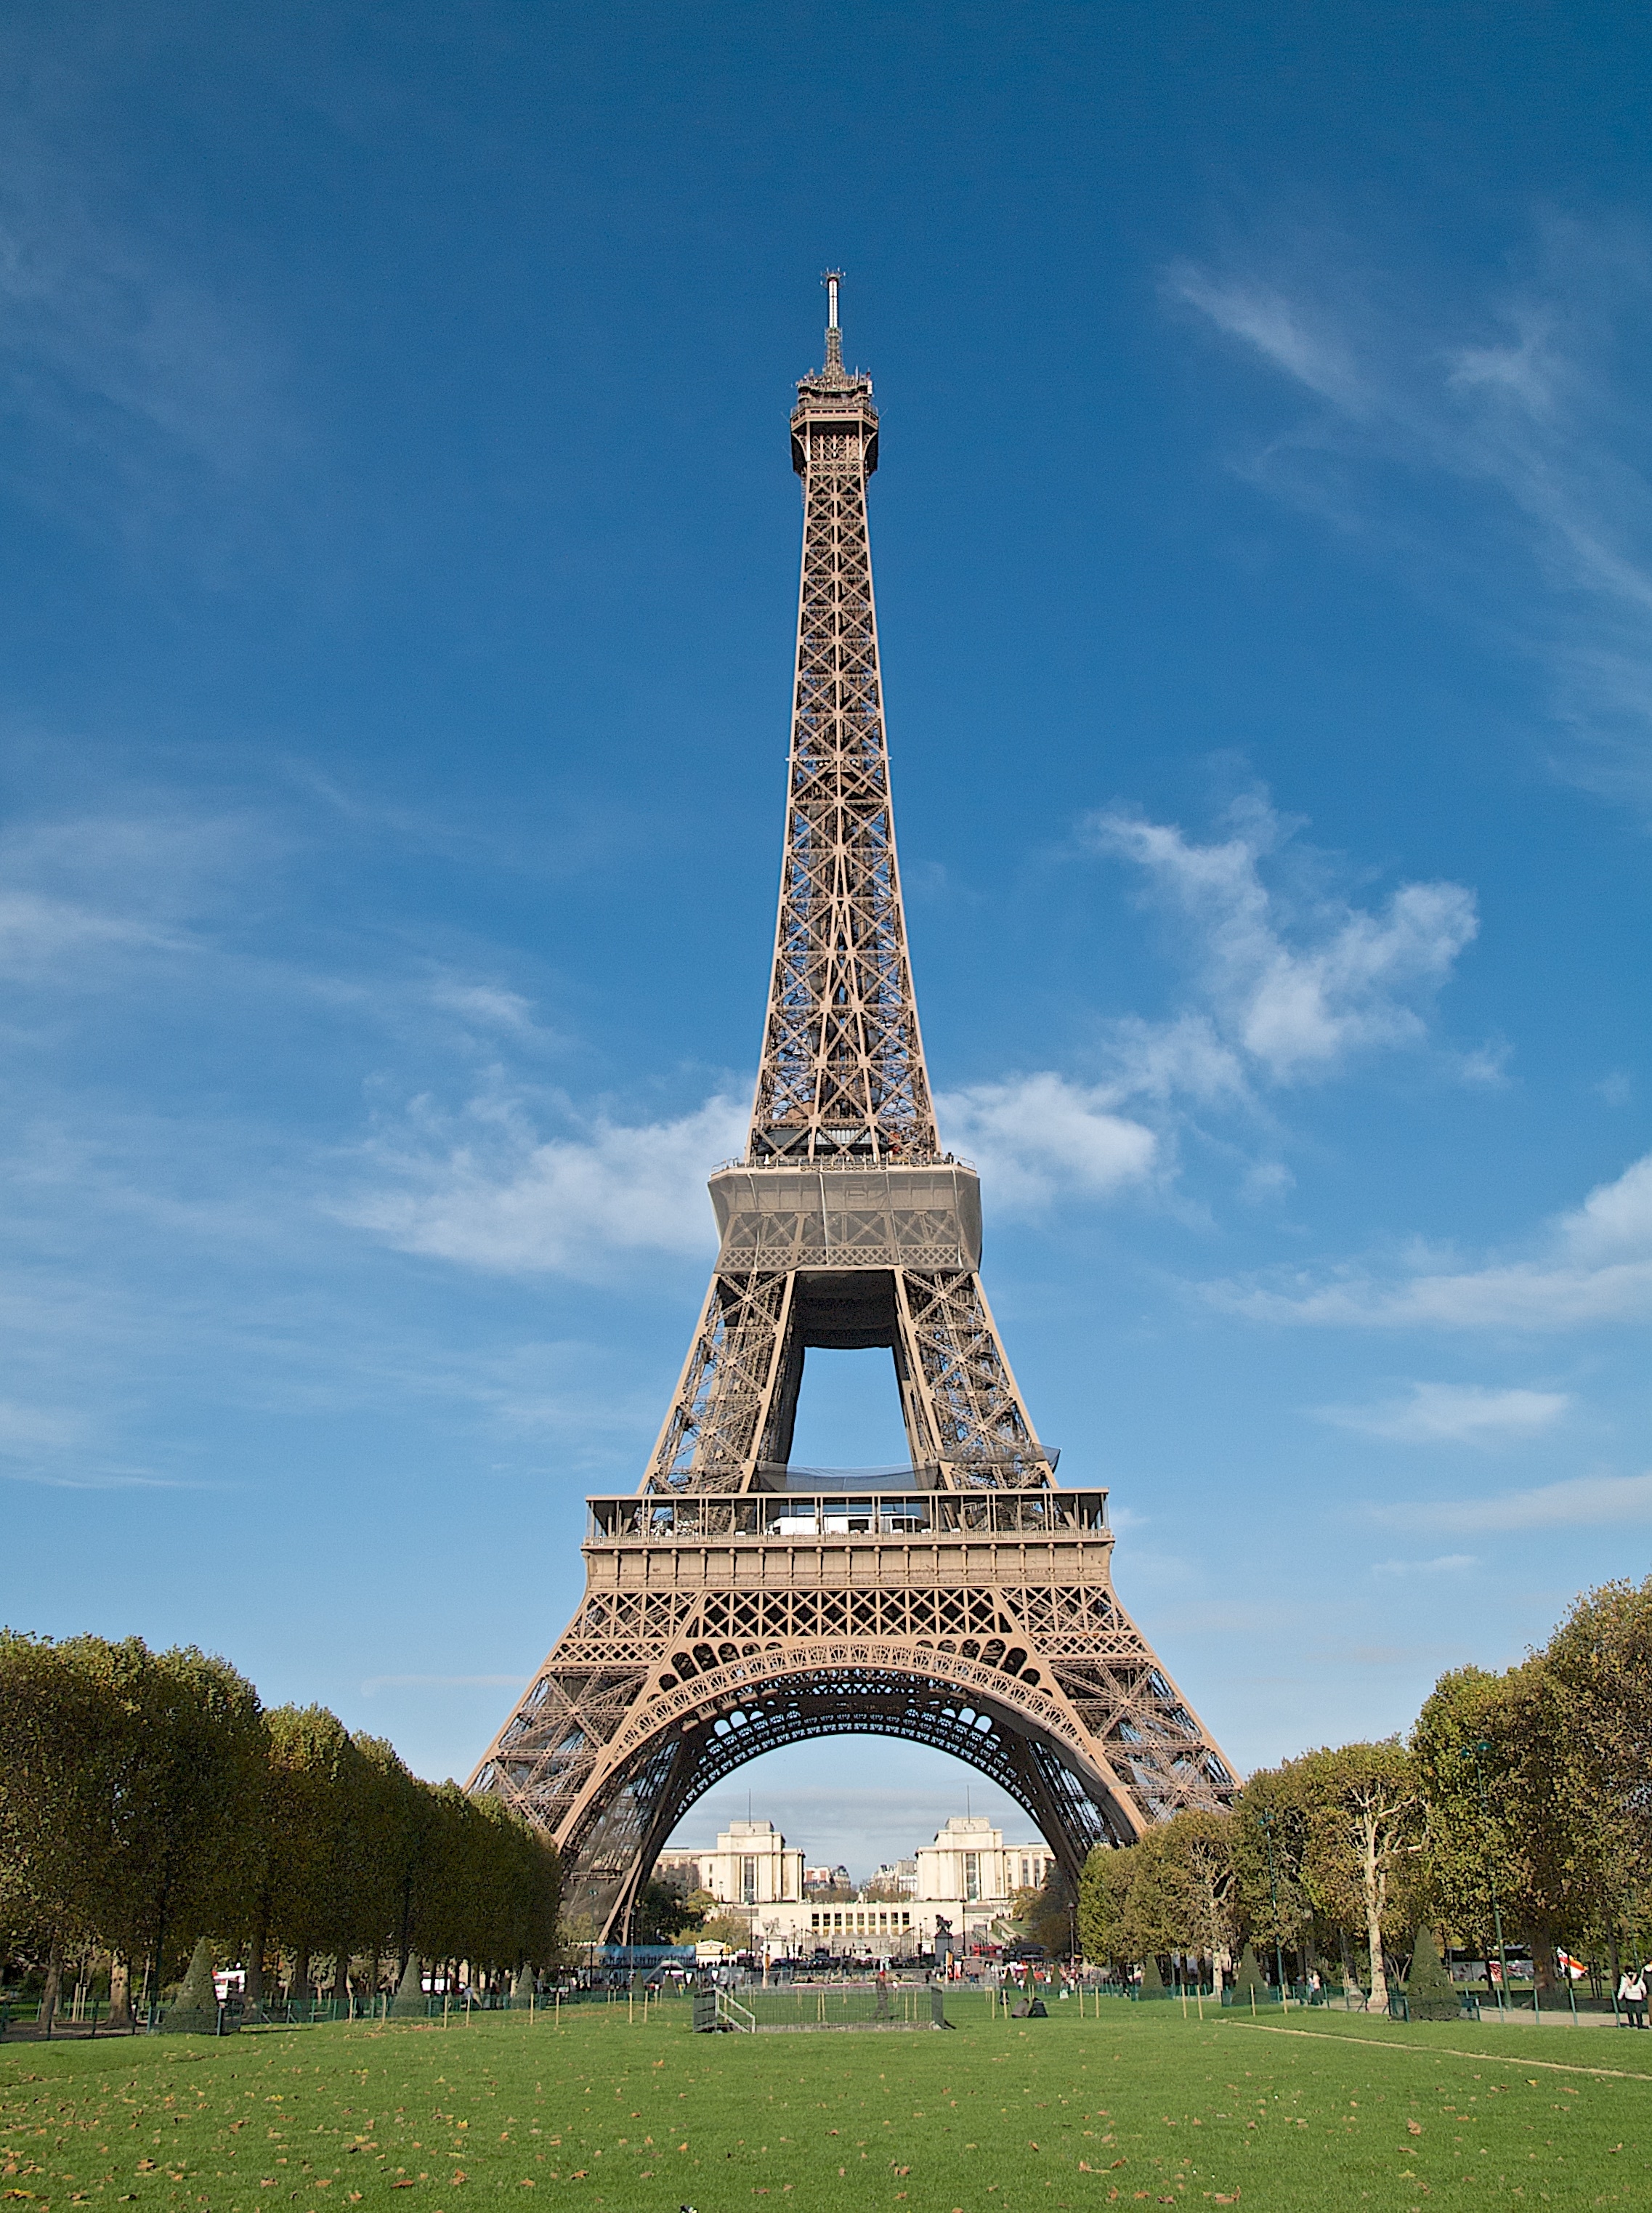 France's famous tourist spot Eiffel tower under bright blue sky